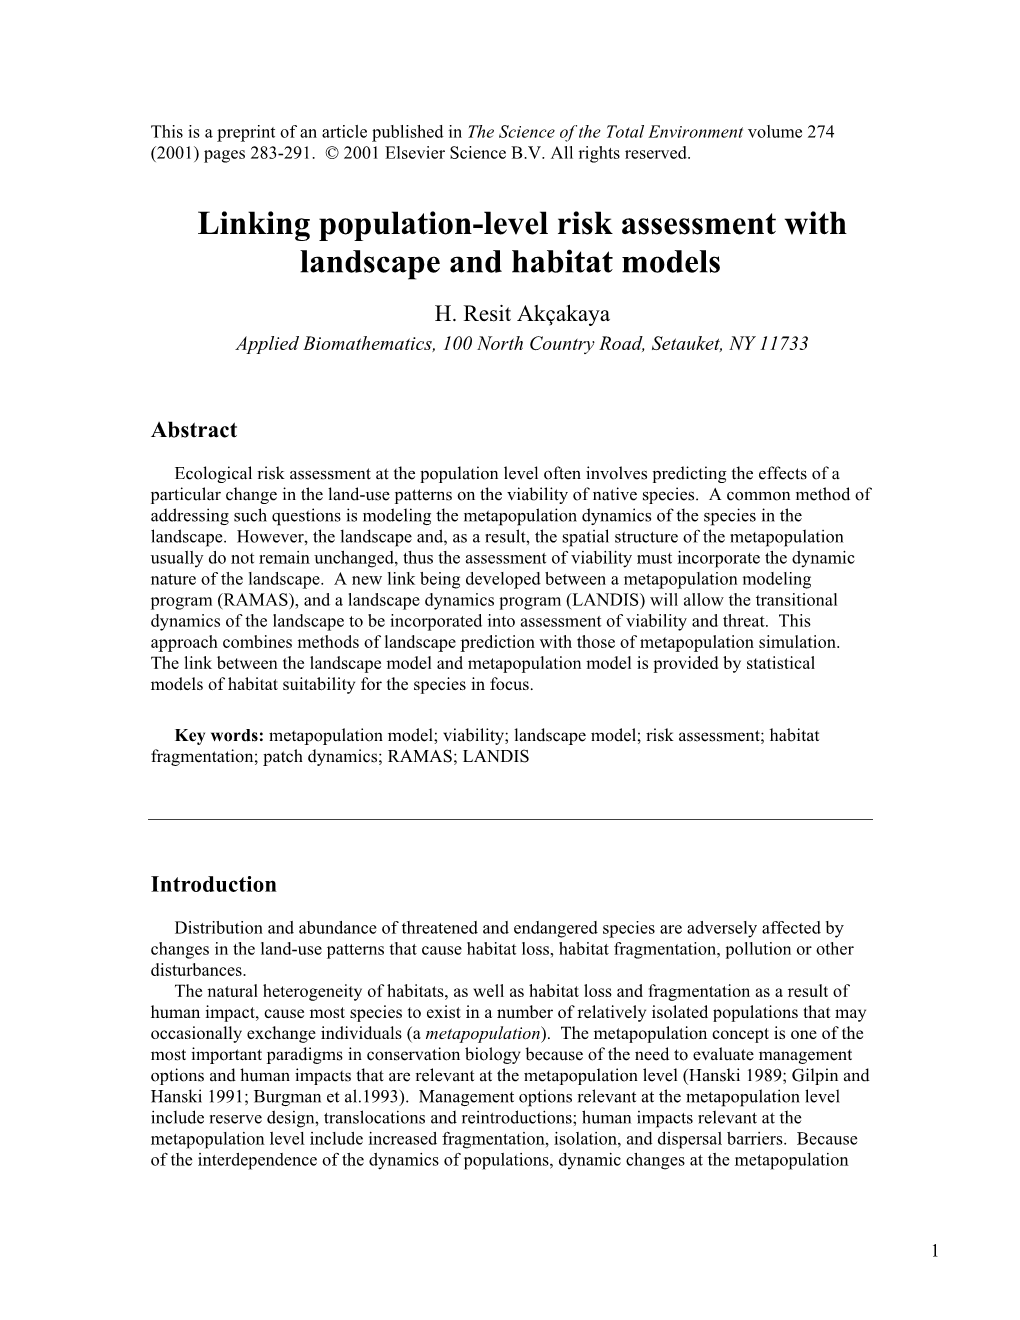 Linking Population-Level Risk Assessment with Landscape and Habitat Models H